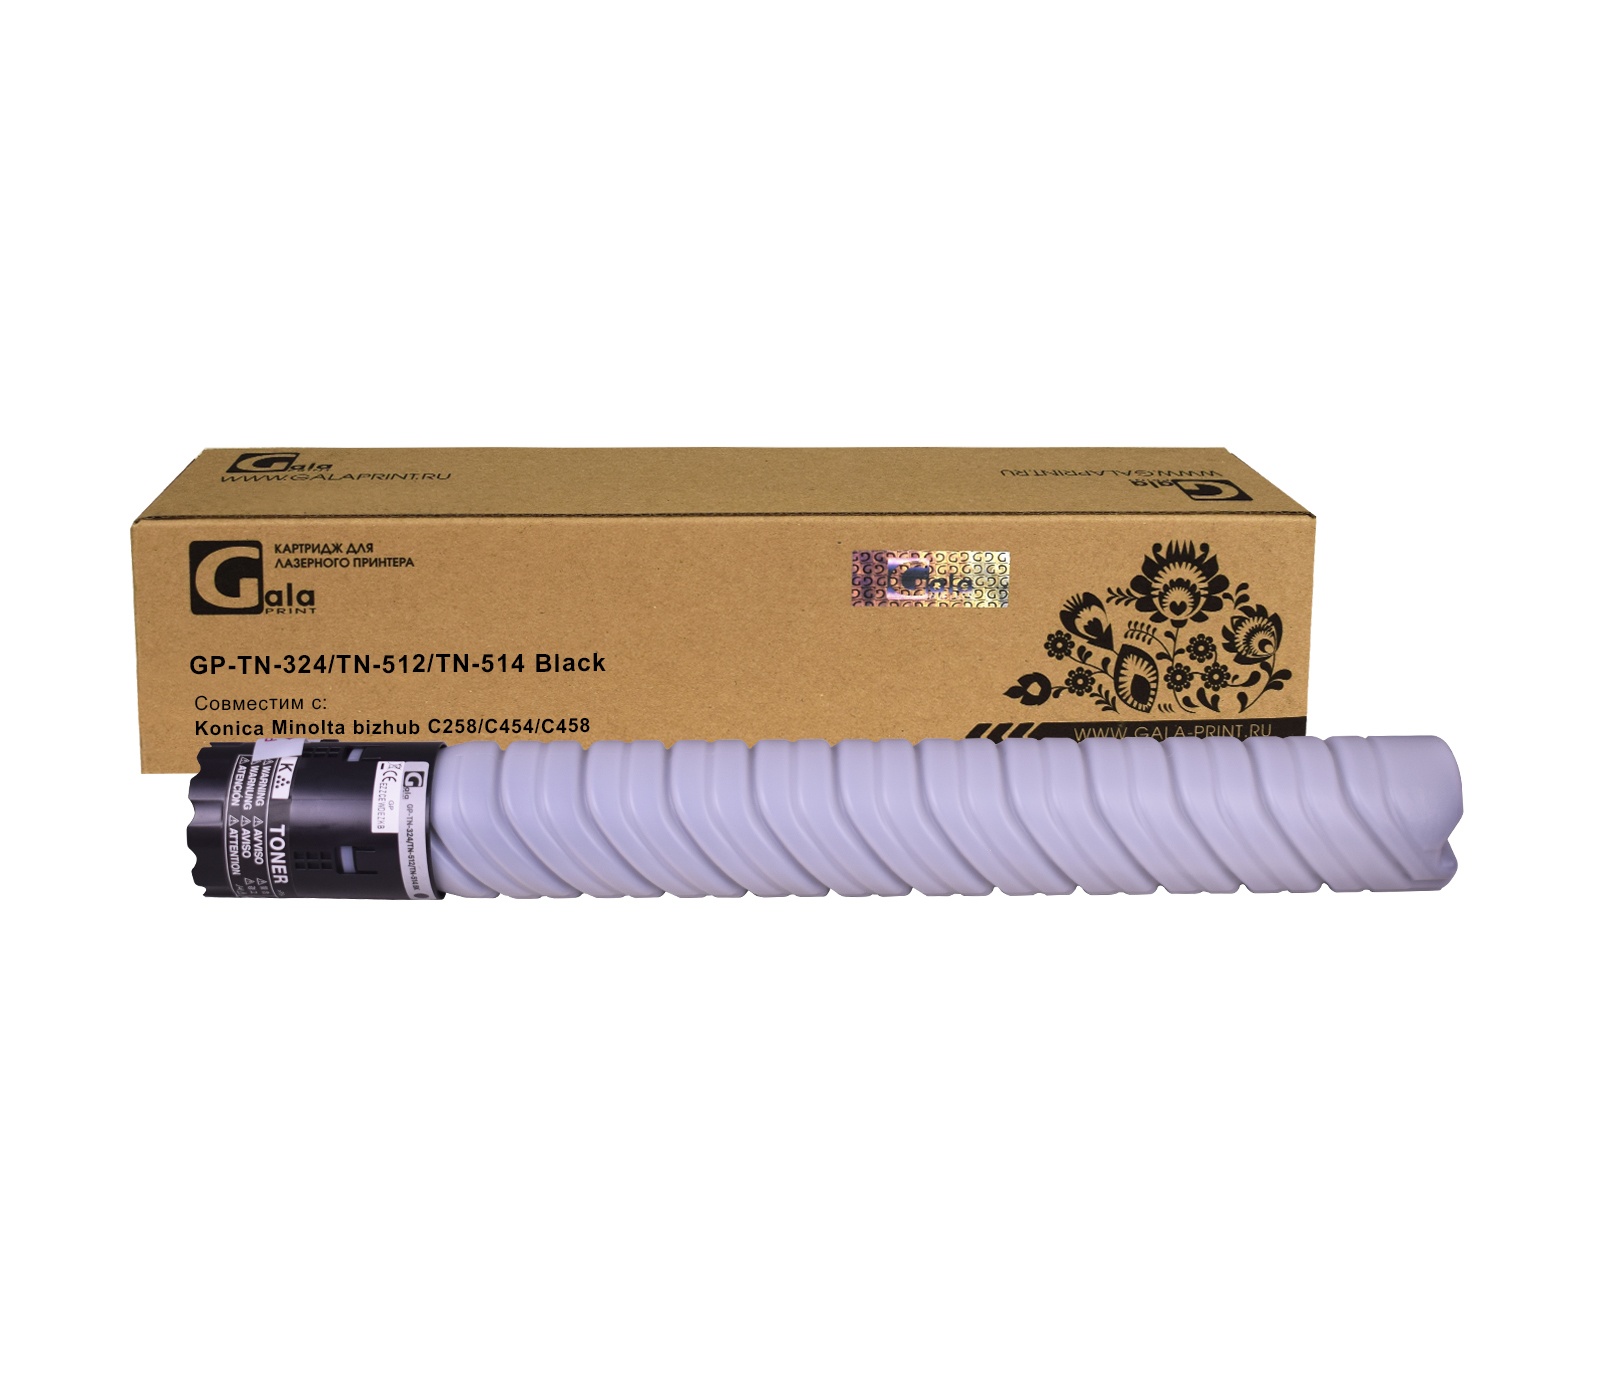 Тонер-туба GP-TN-324/TN-512/TN-514 для принтеров Konica Minolta bizhub C258/C454/C458 Black 28000 копий GalaPrint